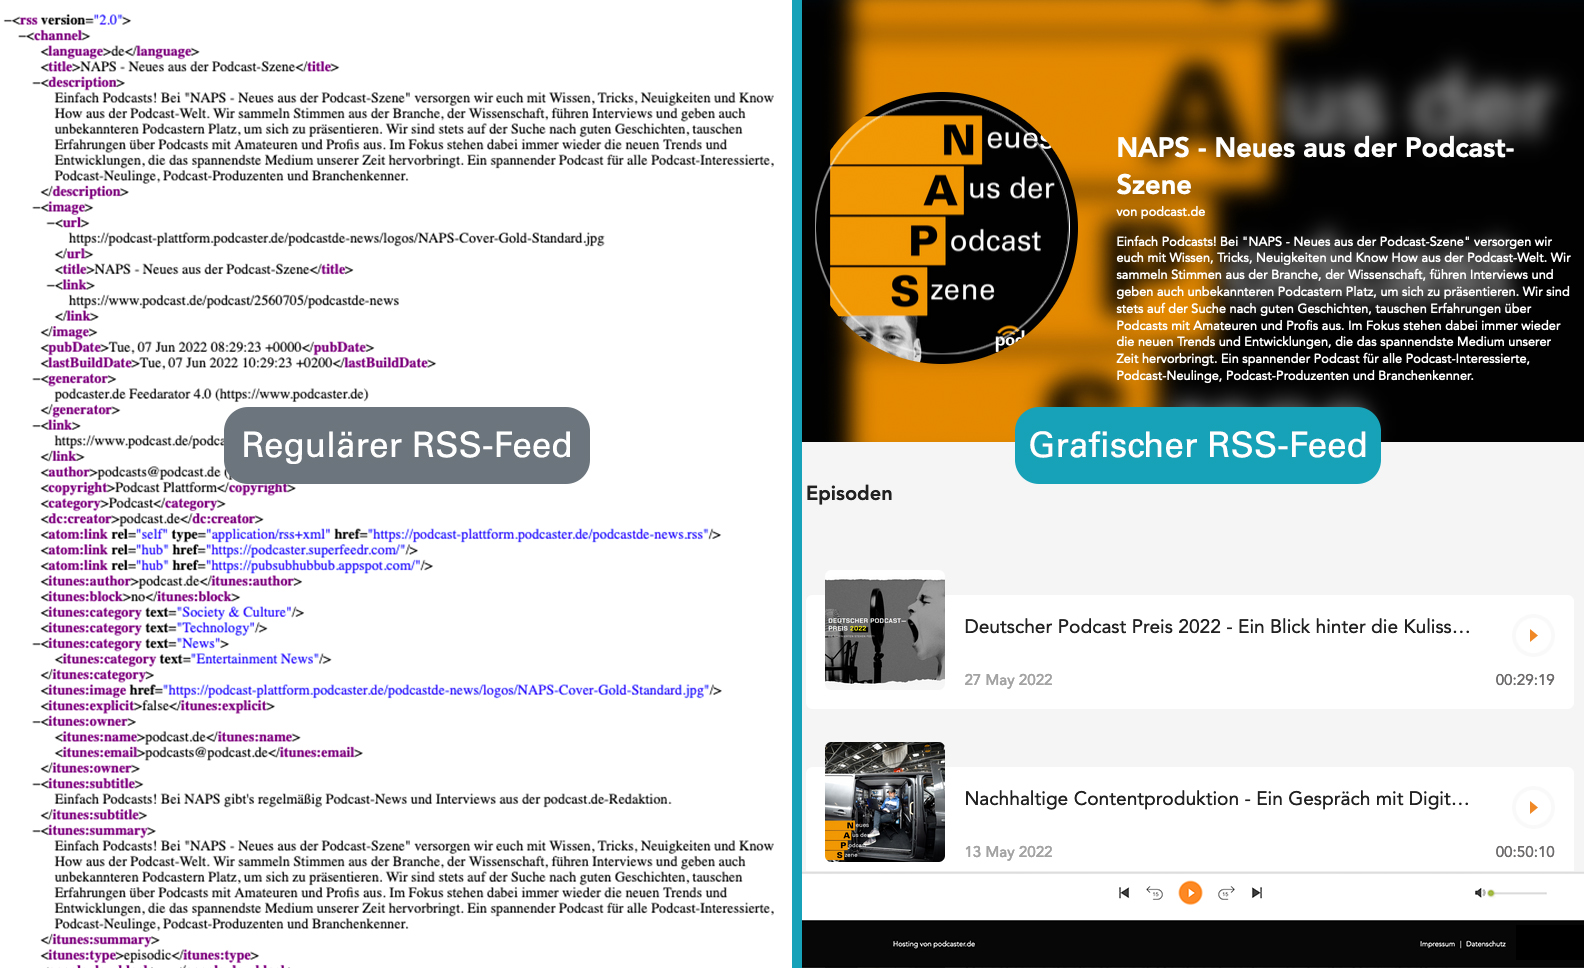 Gegenüberstellung: Regulärer RSS-Feed in Code-Ansicht und Grafischer RSS-Feed von podcaster.de